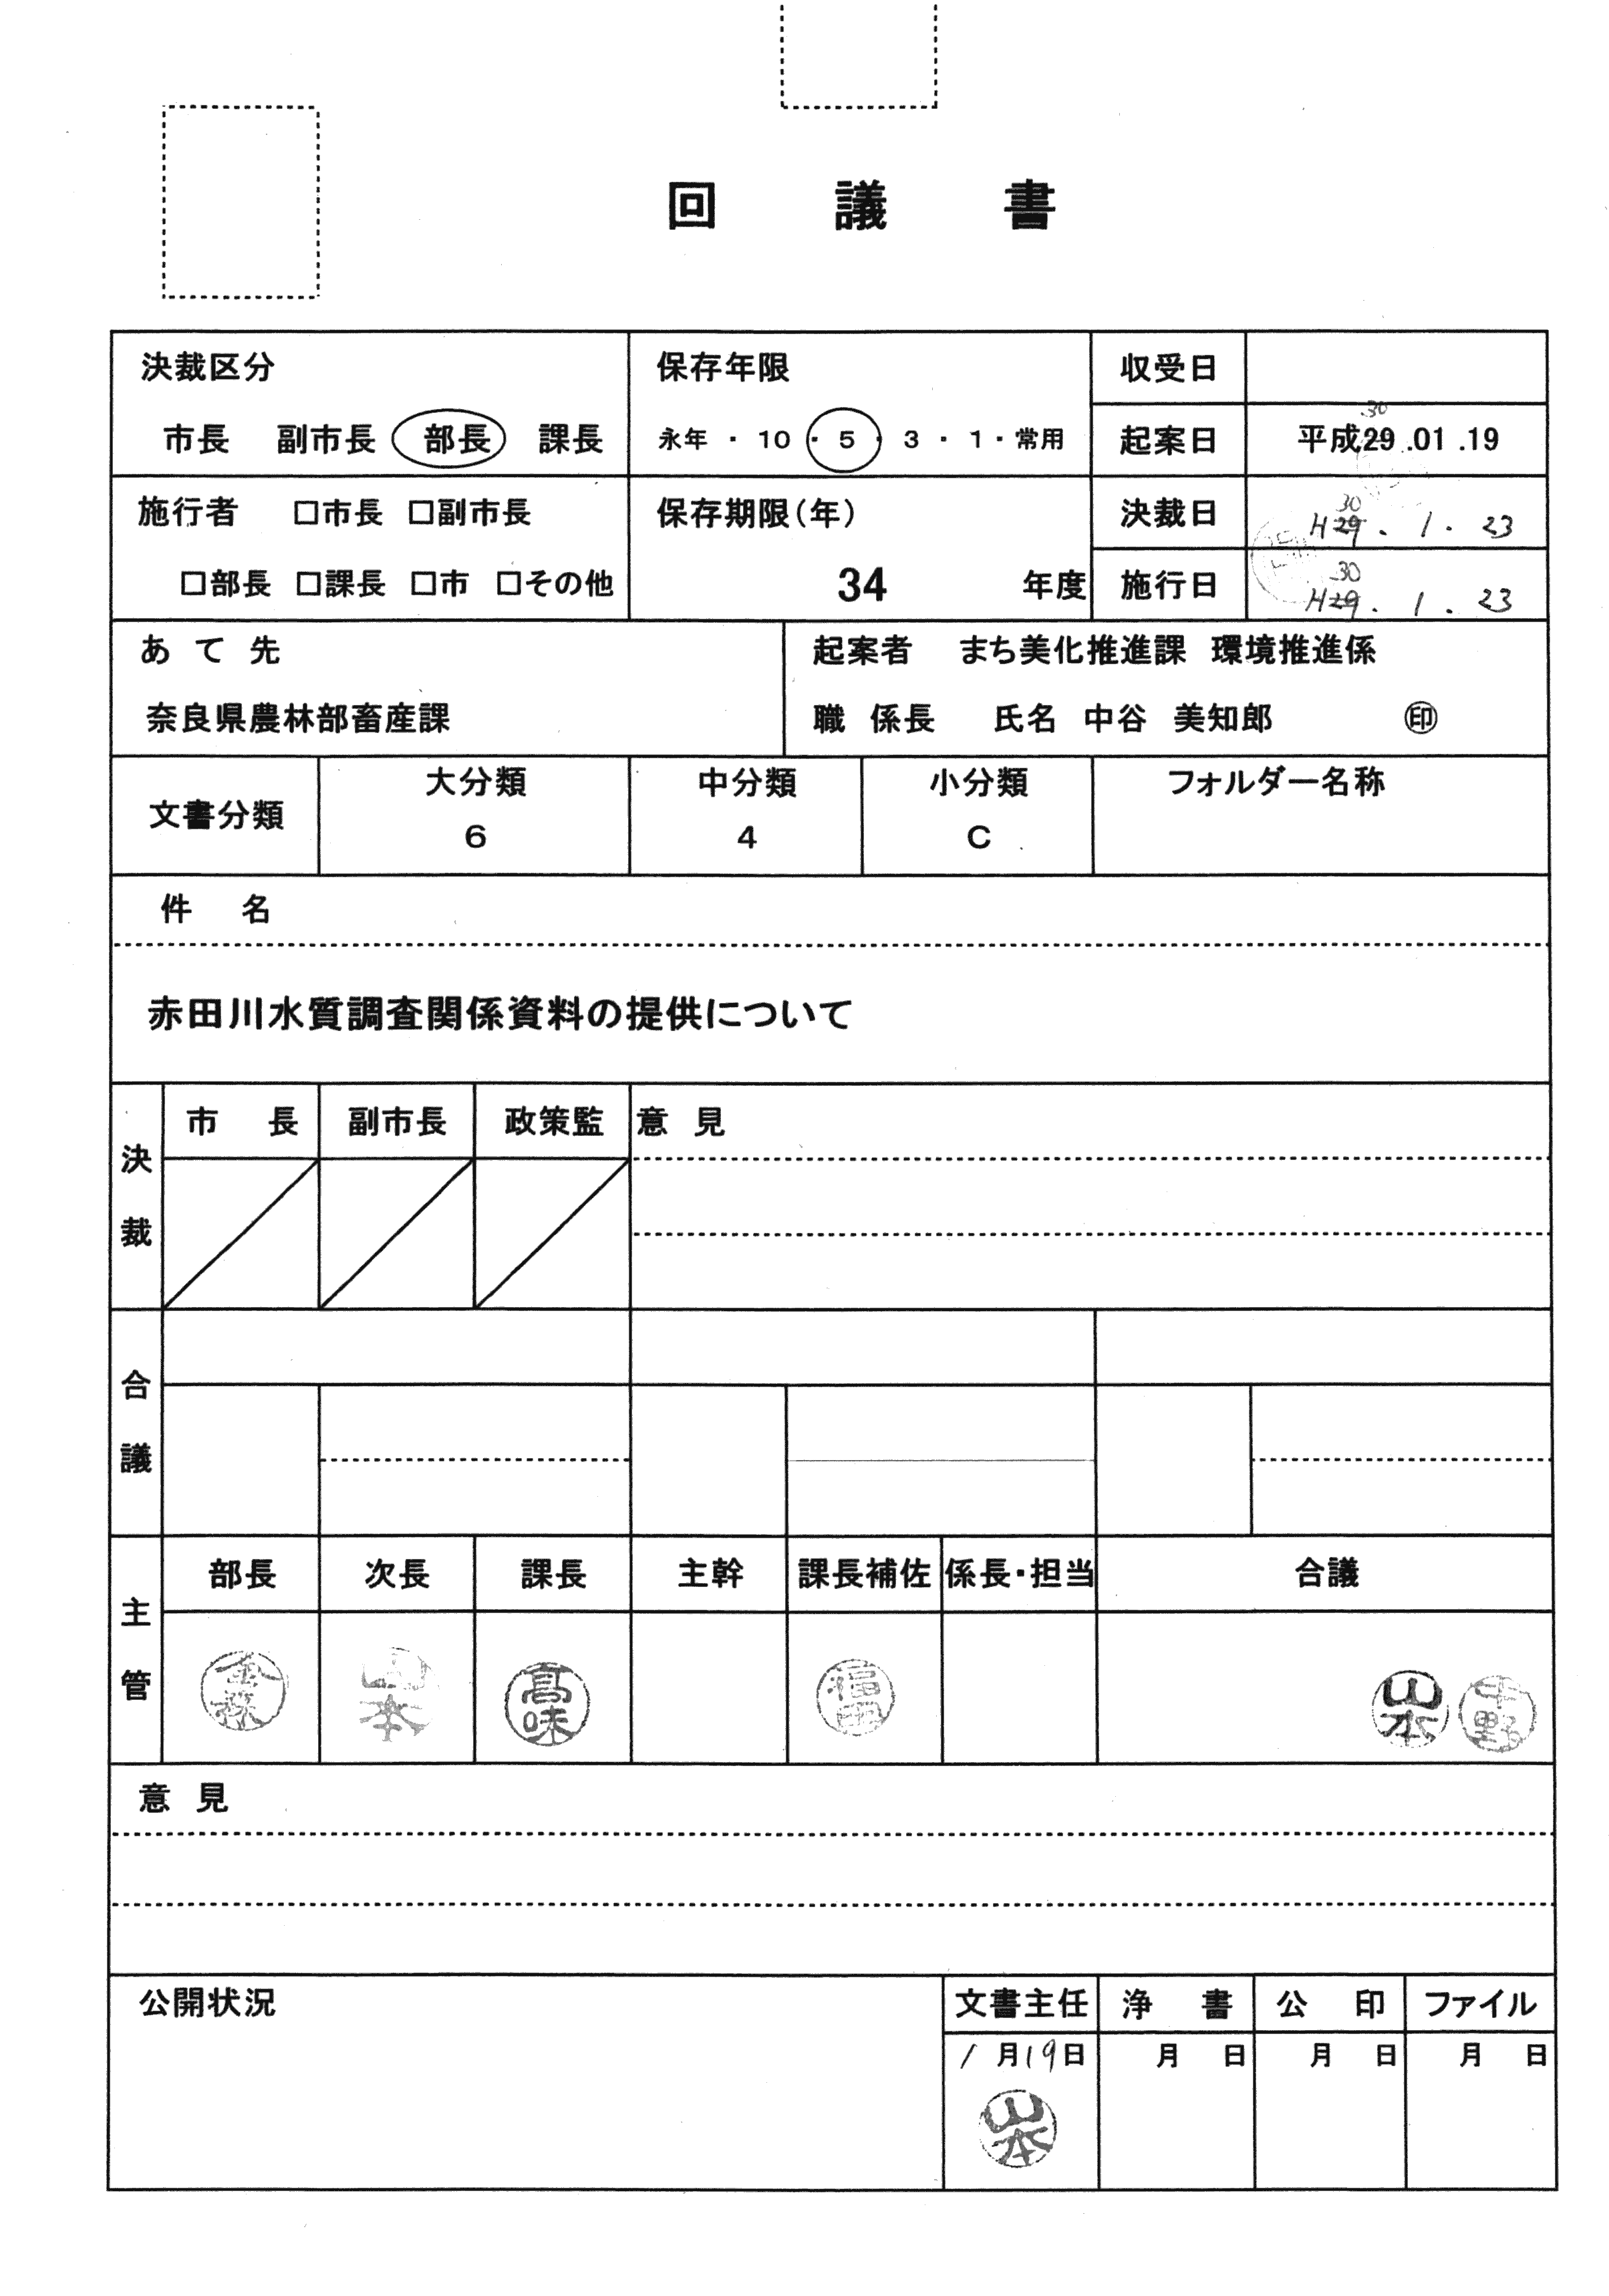 平成30年1月23日-赤田川水質調査関係資料の提供について-00-01